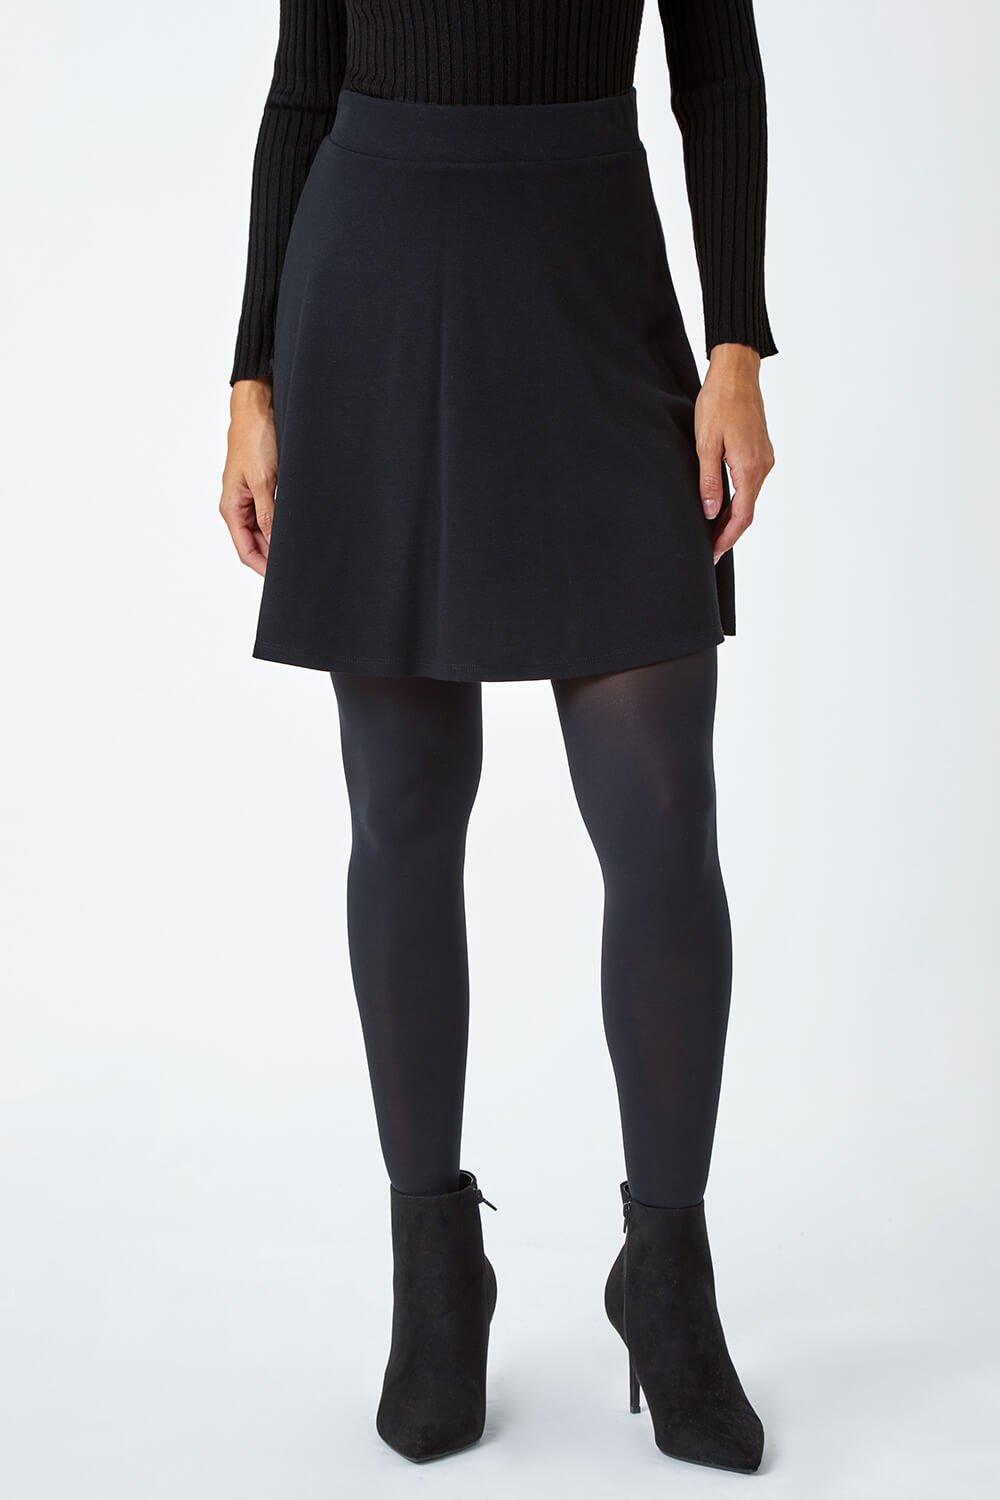 Black Stretch Skater Skirt, Image 4 of 5